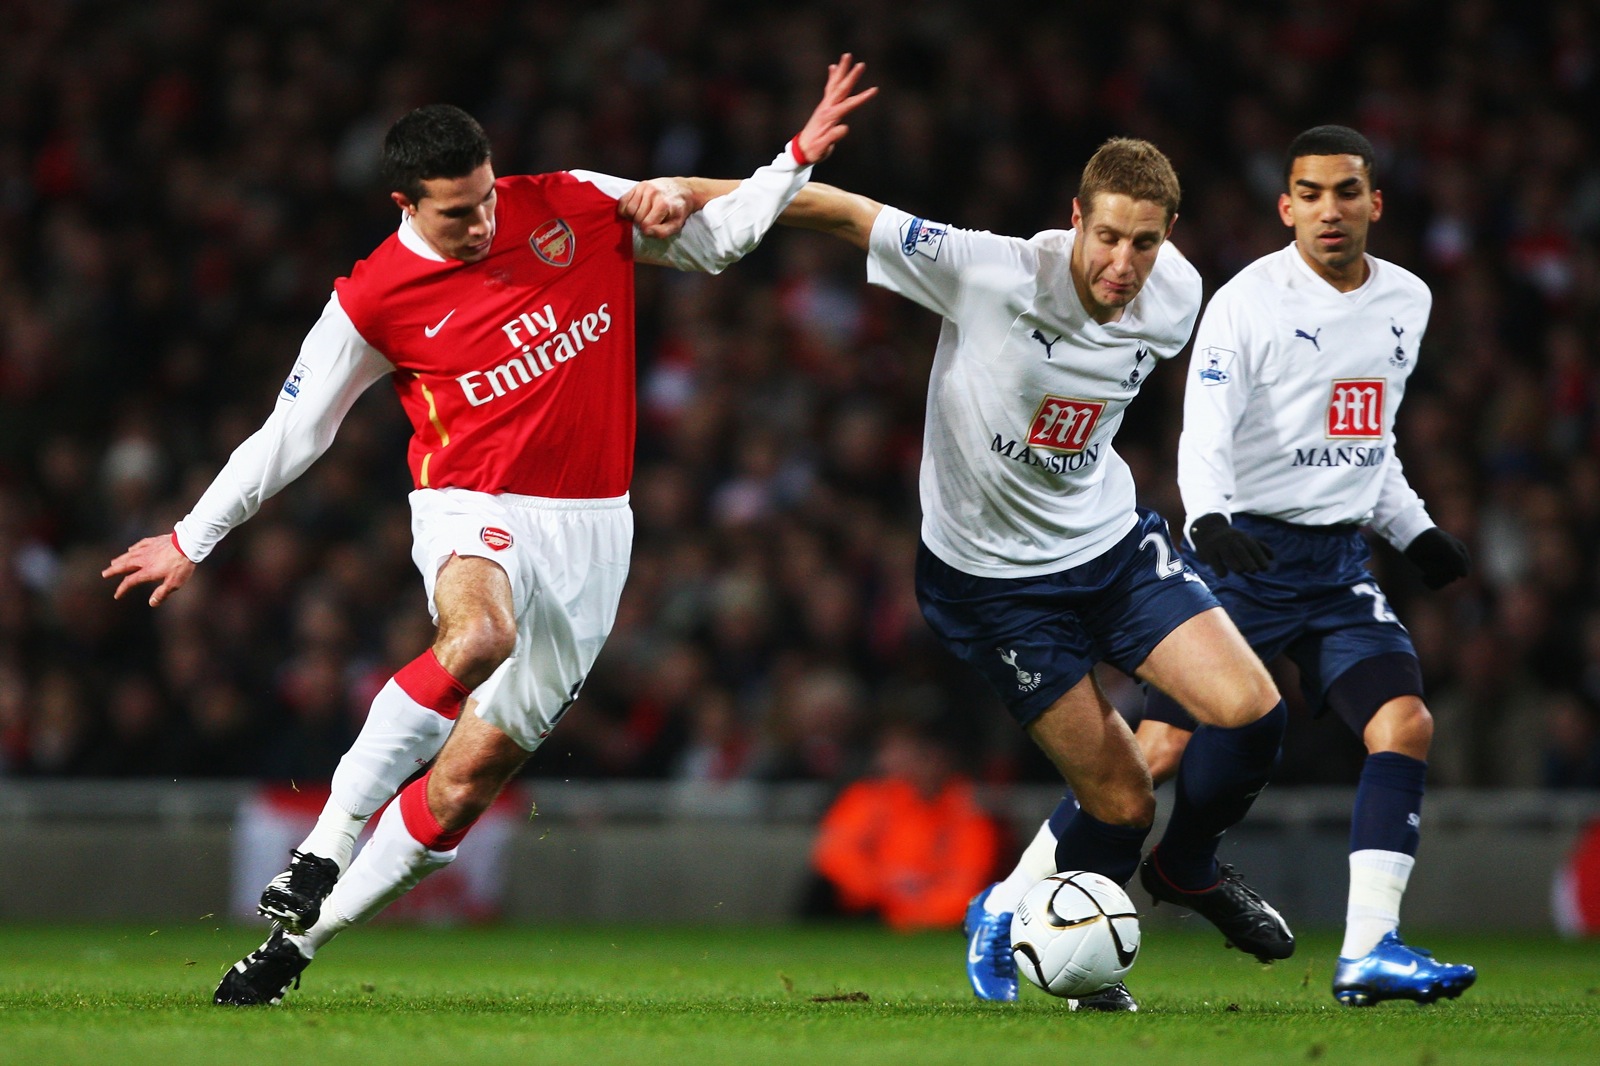 Carling Cup semi final review Arsenal 1-1 Tottenham